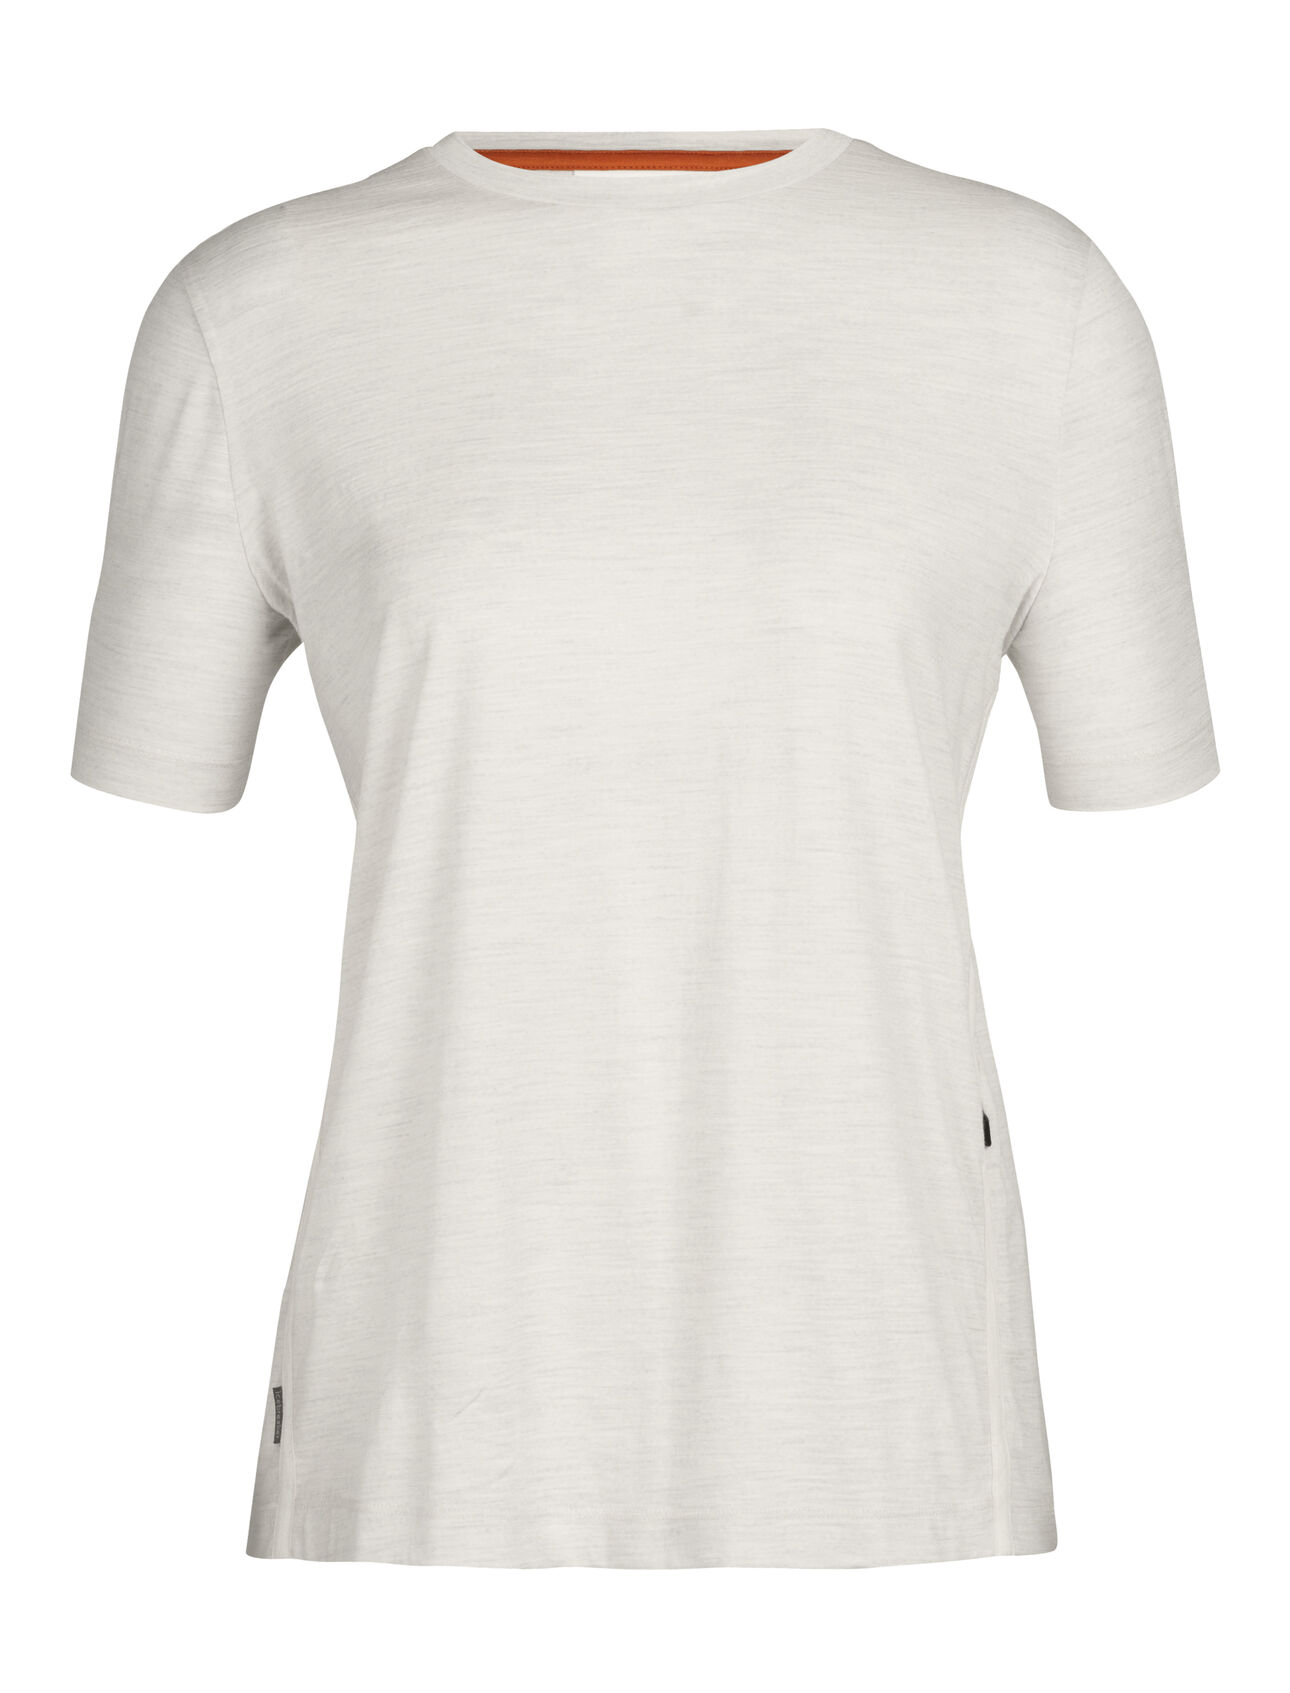 T-shirt mérinos Femme Haut incroyablement polyvalent, le t-shirt mérinos est composé d’un jersey 100 % mérinos doux et respirant, pour un confort naturel lors de toutes vos activités. 